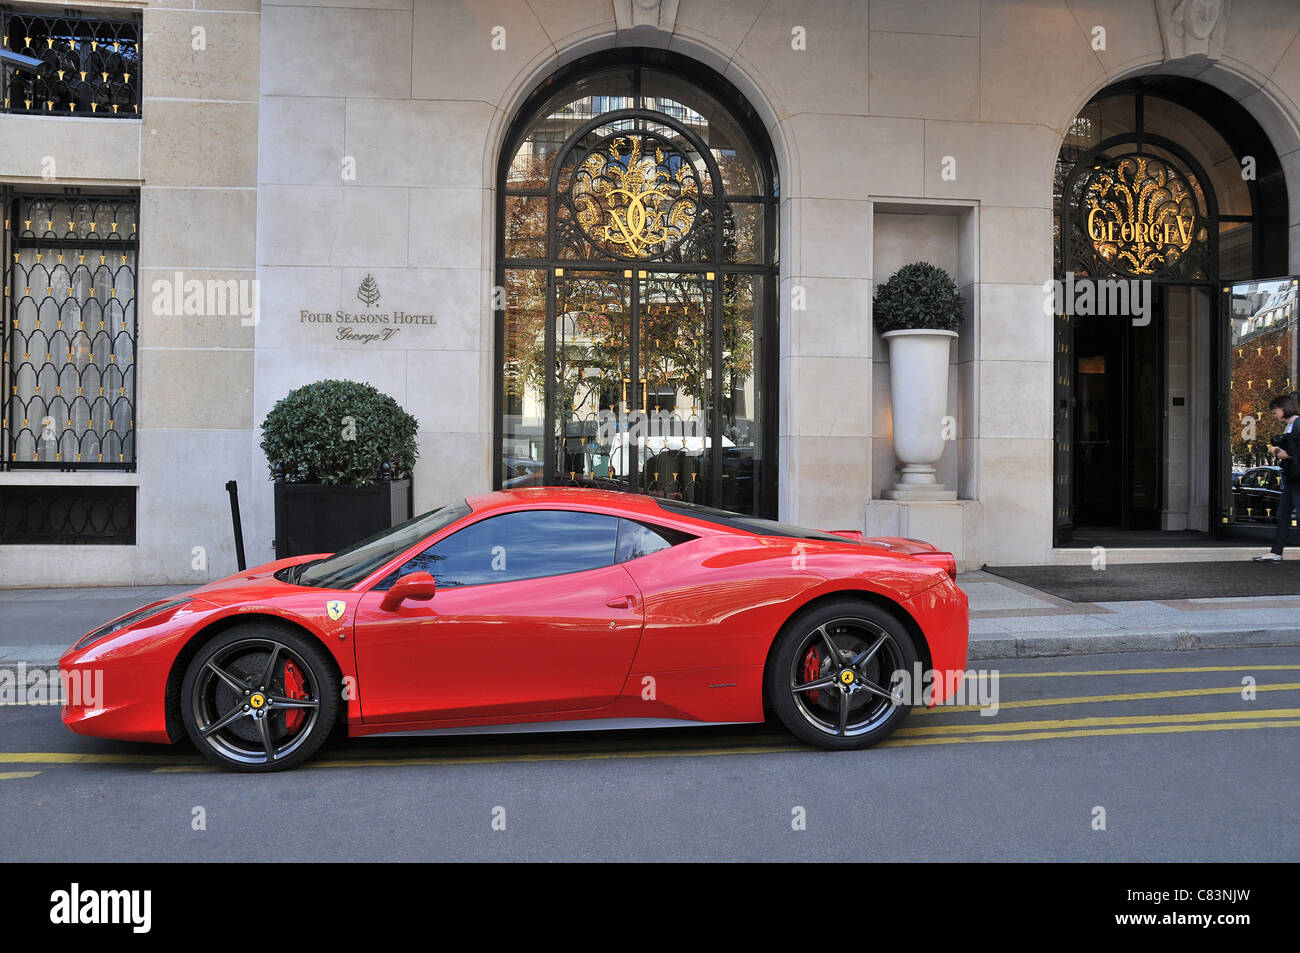 Ferrari voiture avant de l'hôtel Four Seasons George V Paris France Banque D'Images